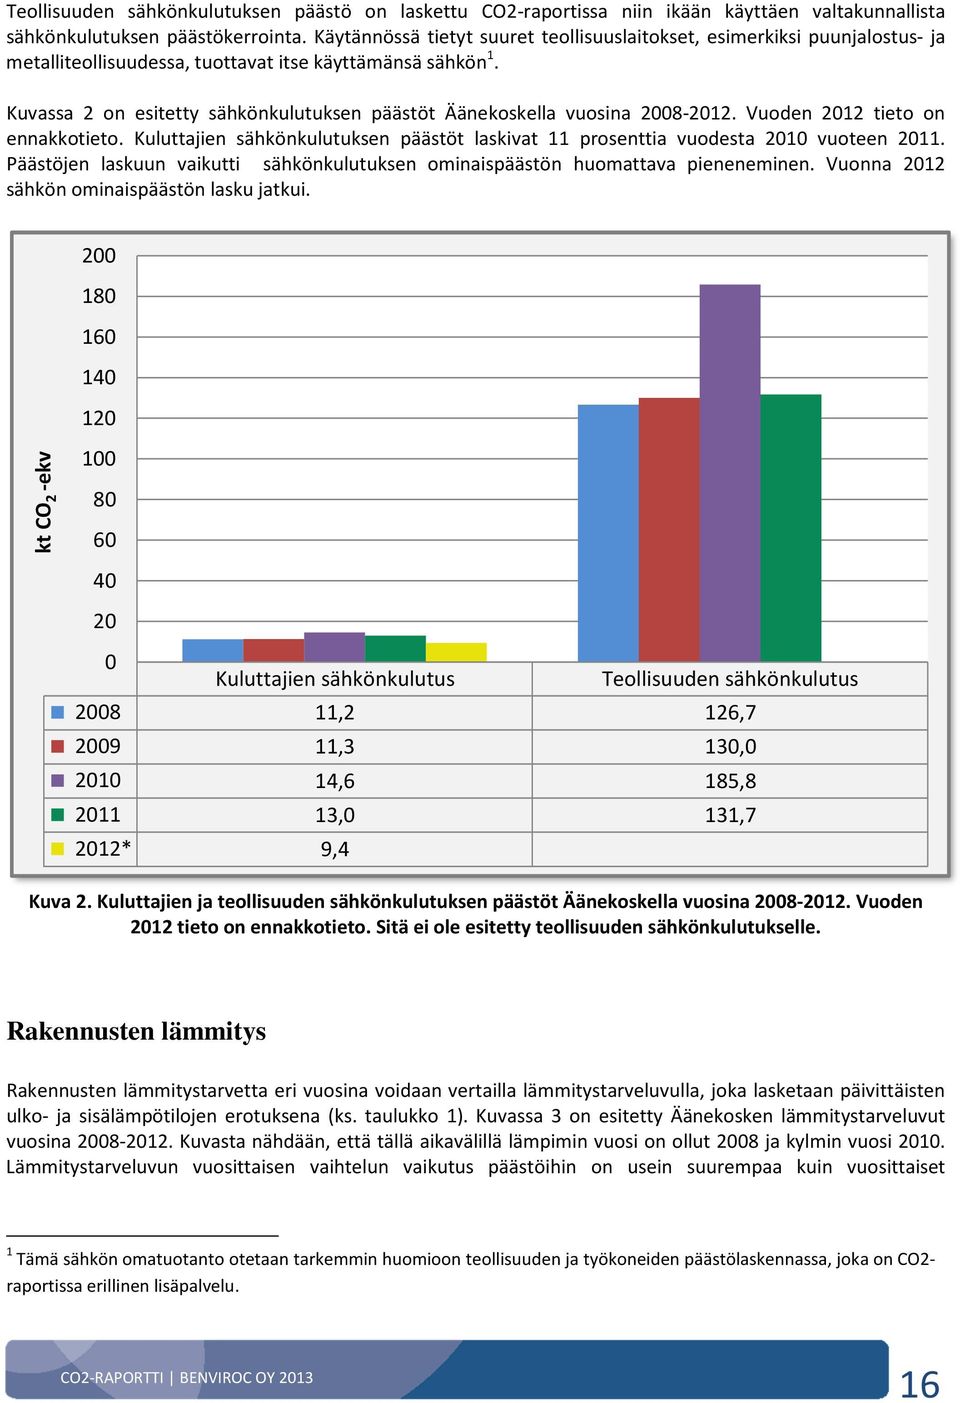 Kuvassa 2 on esitetty sähkönkulutuksen päästöt Äänekoskella vuosina 2008-2012. Vuoden 2012 tieto on ennakkotieto.